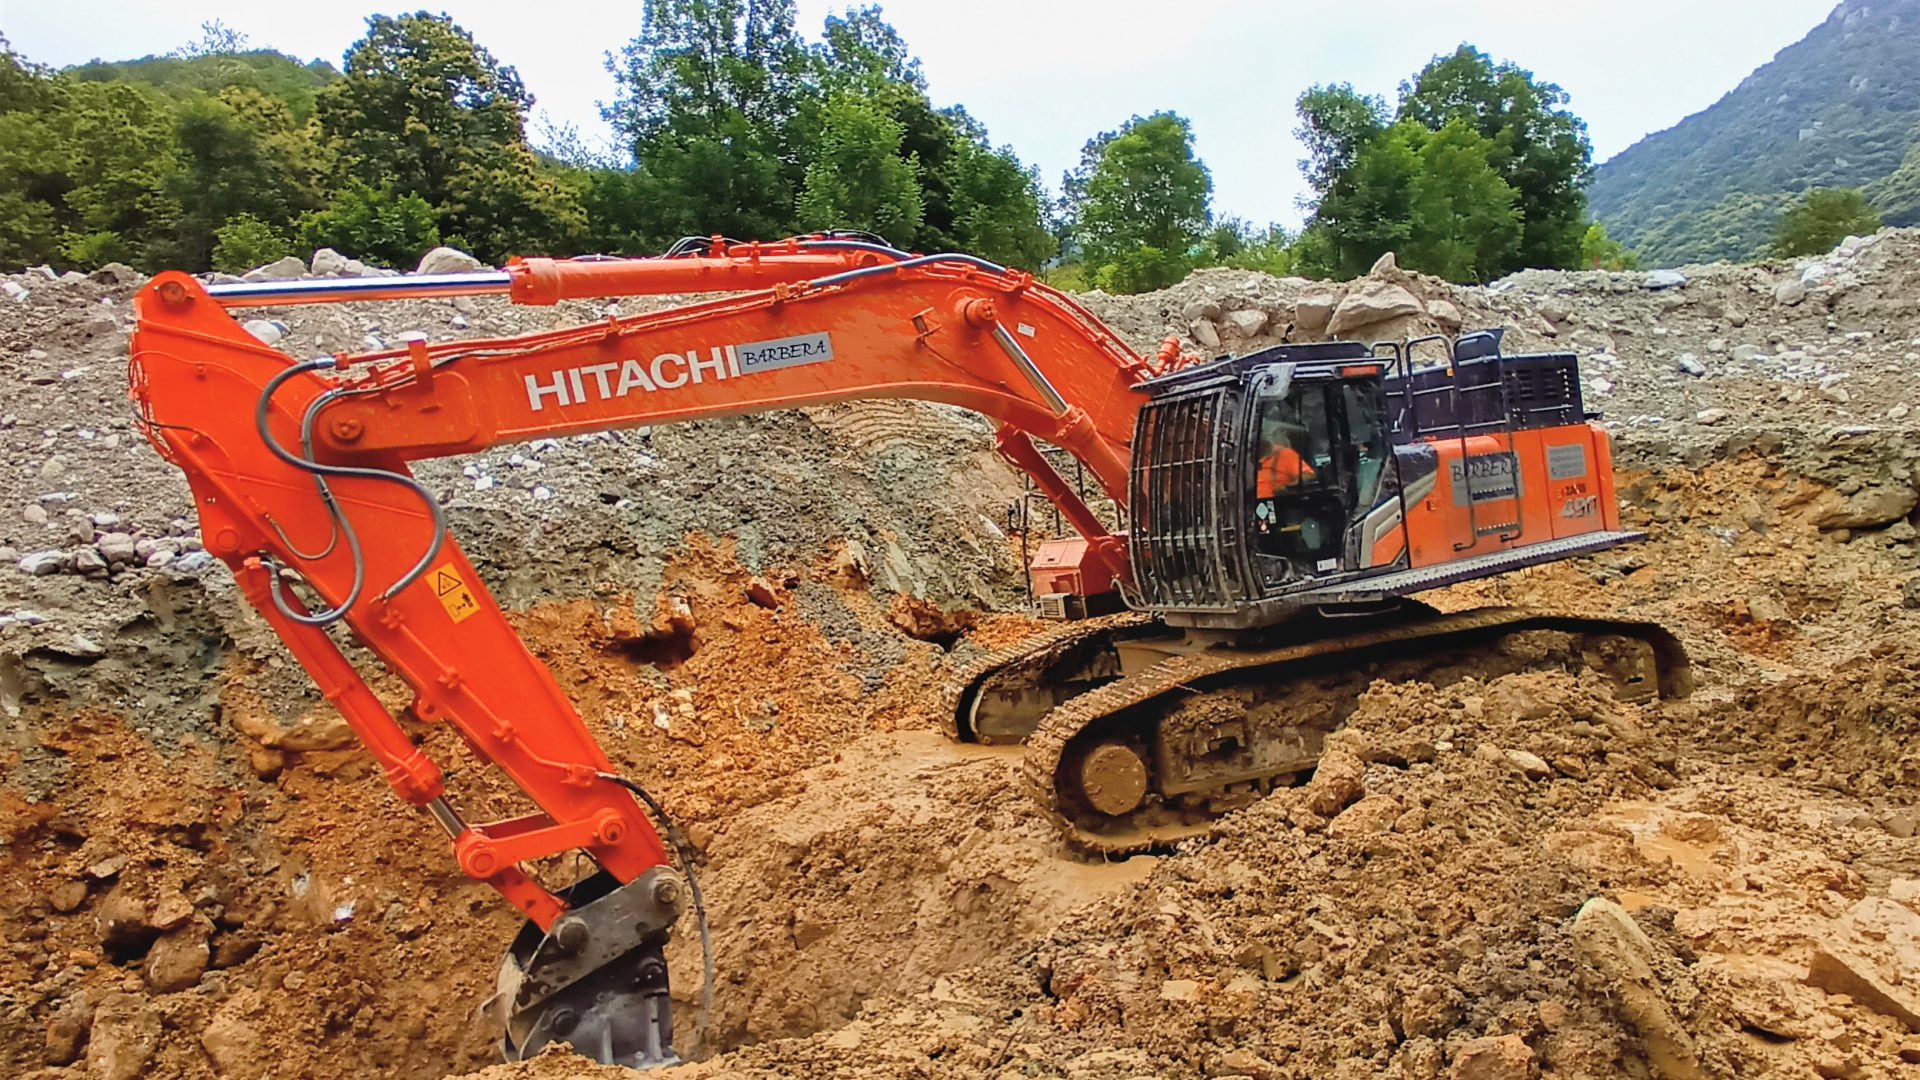 L'escavatore Hitachi preso a noleggio da Barbera Srl è impegnato in modo importante